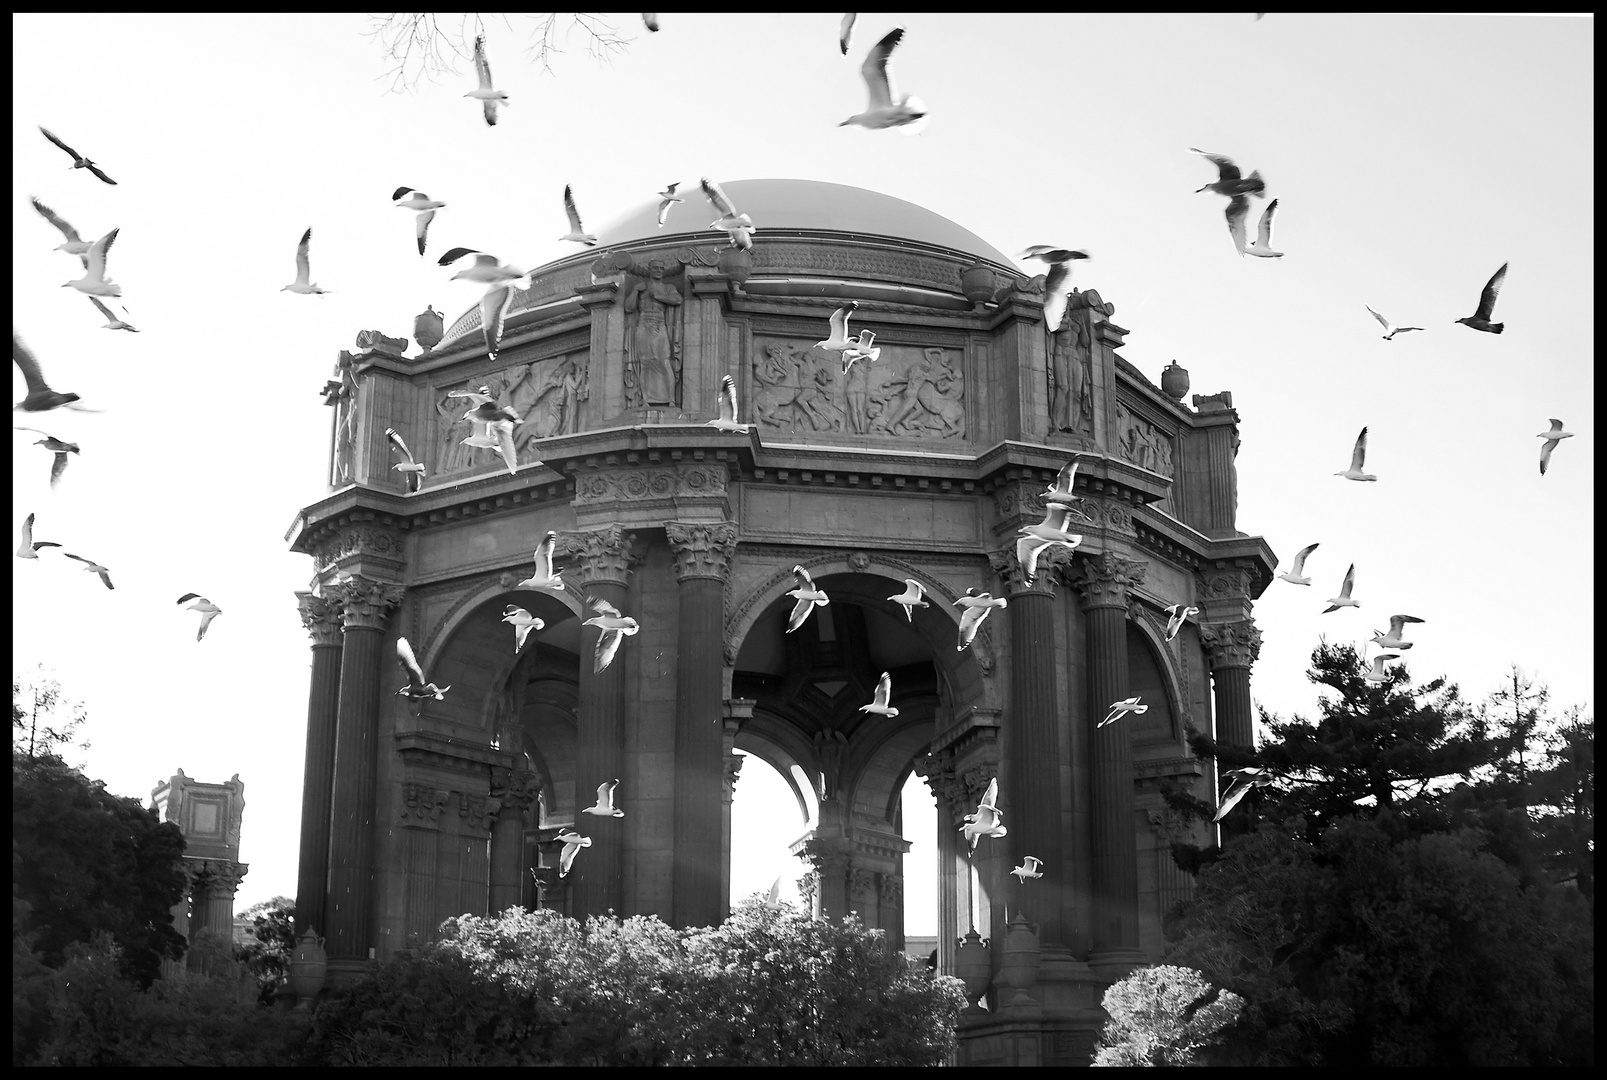 Palace of Birds